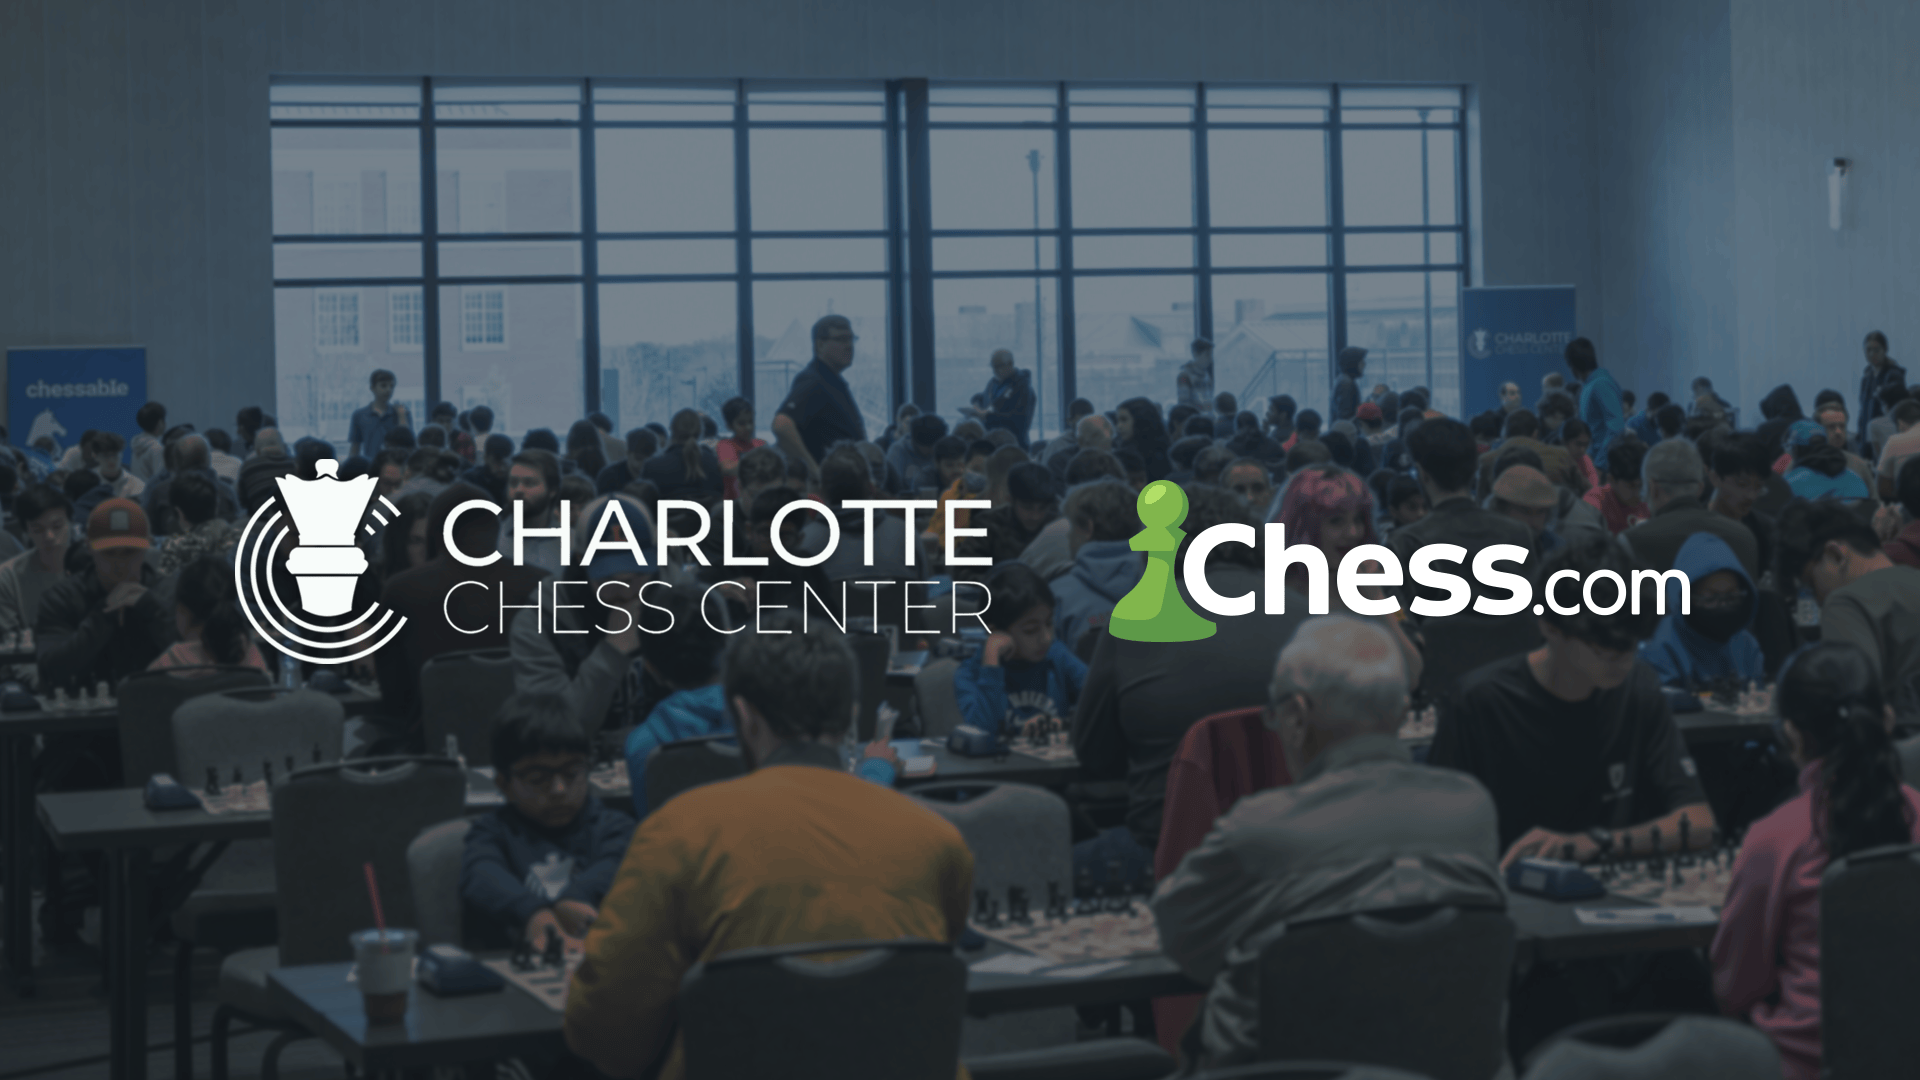 Chess.com 宣布与夏洛特国际象棋中心 Scholastic Academy 建立合作伙伴关系